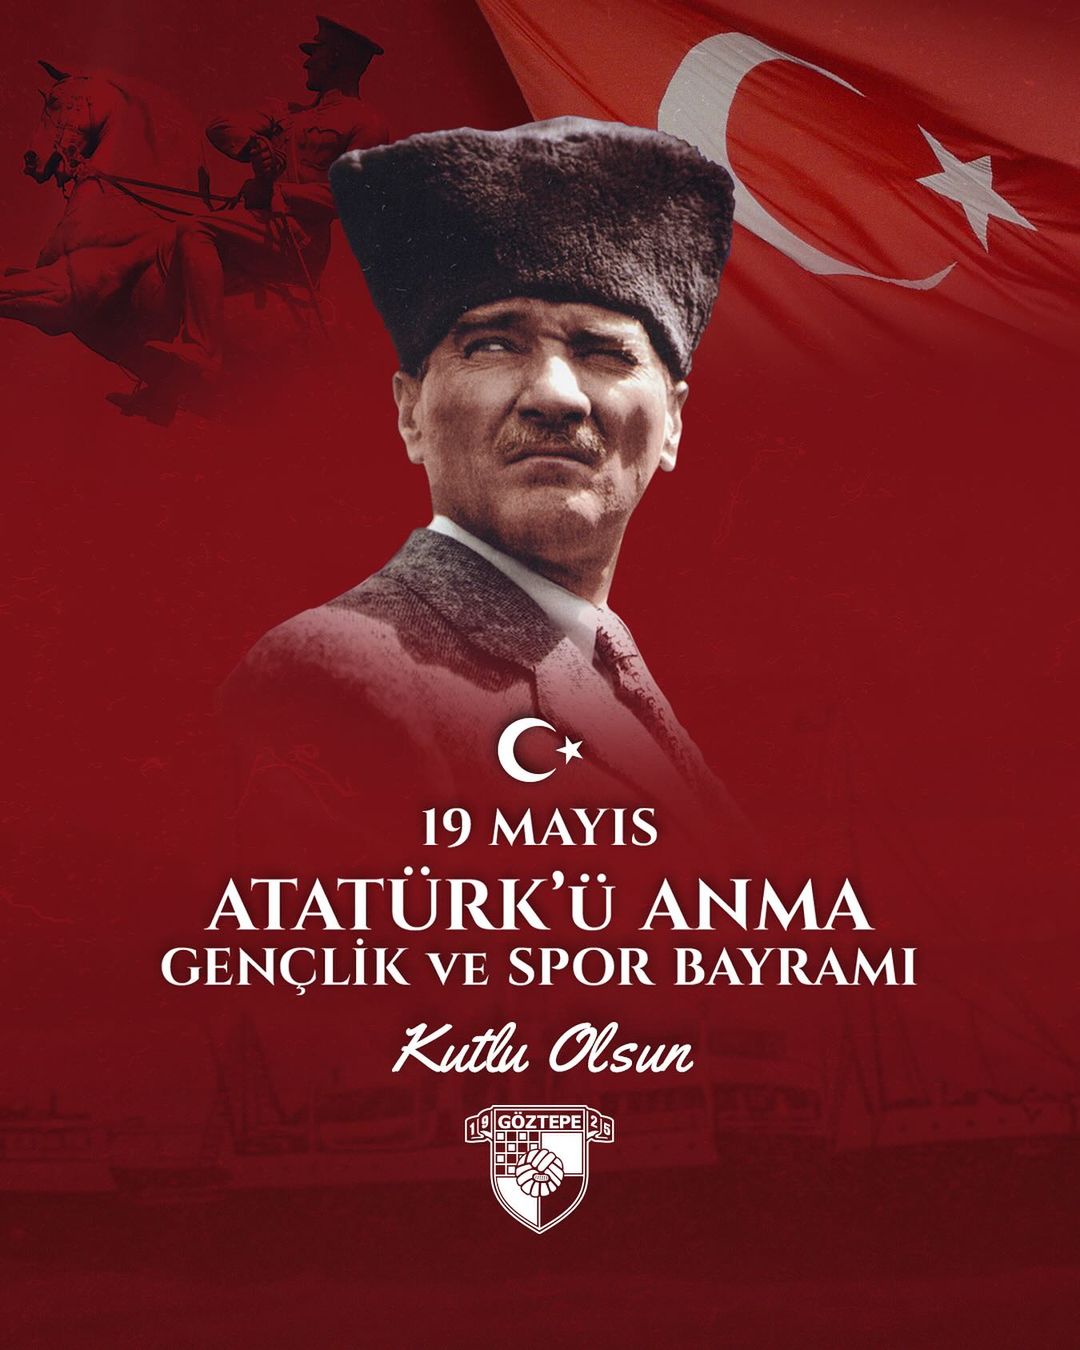 Göztepe Spor Kulübü 19 Mayıs'ı Kutladı